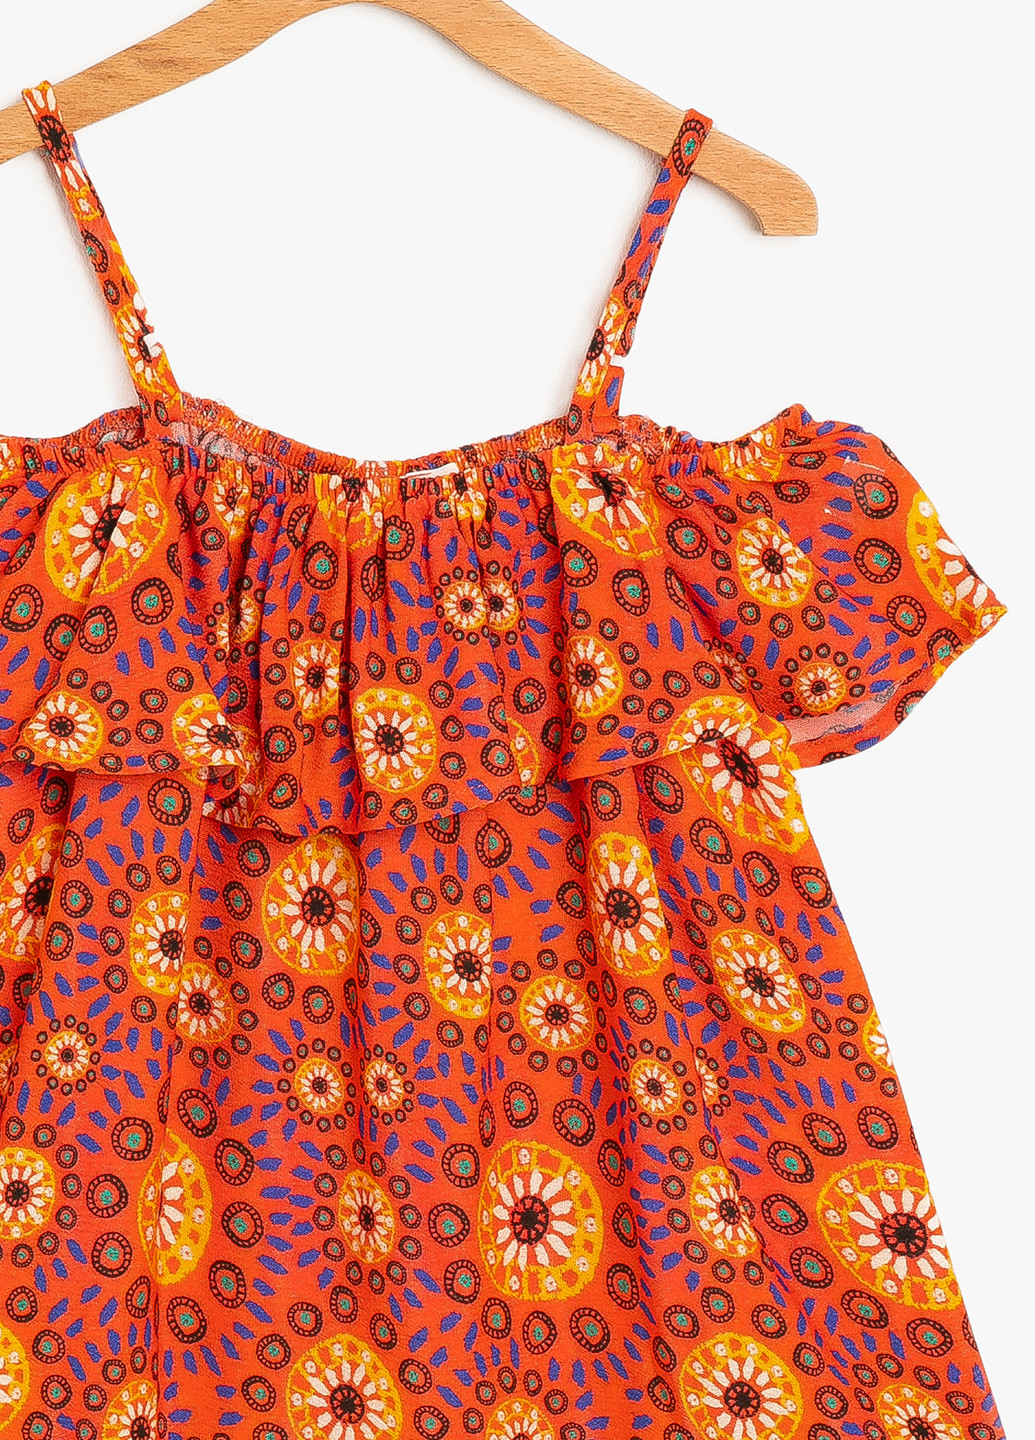 Оранжевая цветочной расцветки блузка KOTON летняя